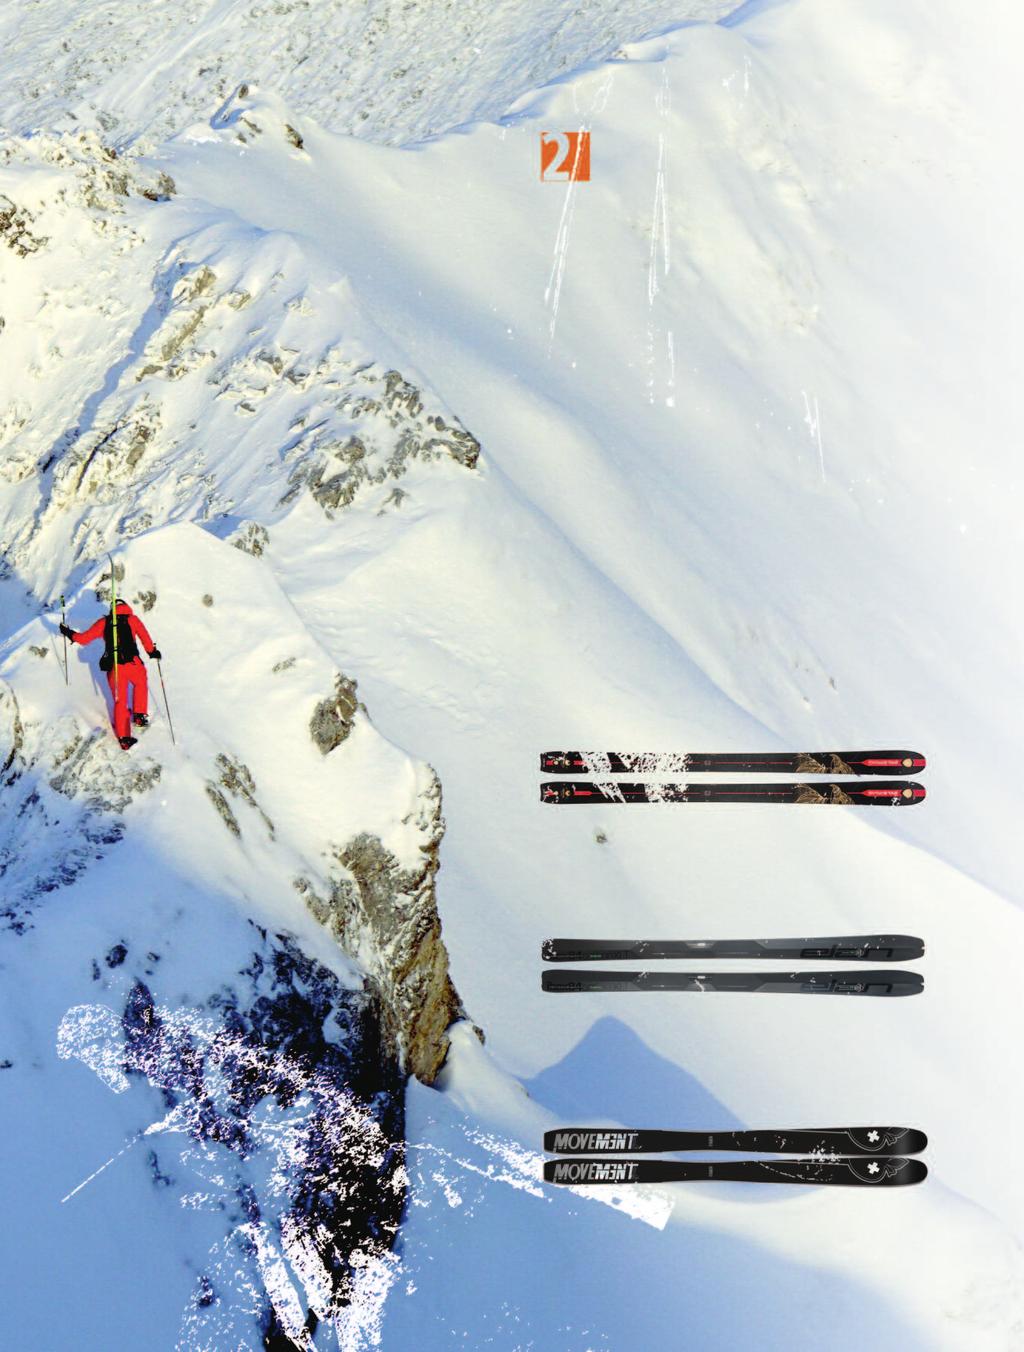 Bei Schlechtschnee ist allerdings solides skifahrerisches Können gefragt, um wirklich Spaß an der Abfahrt zu haben.